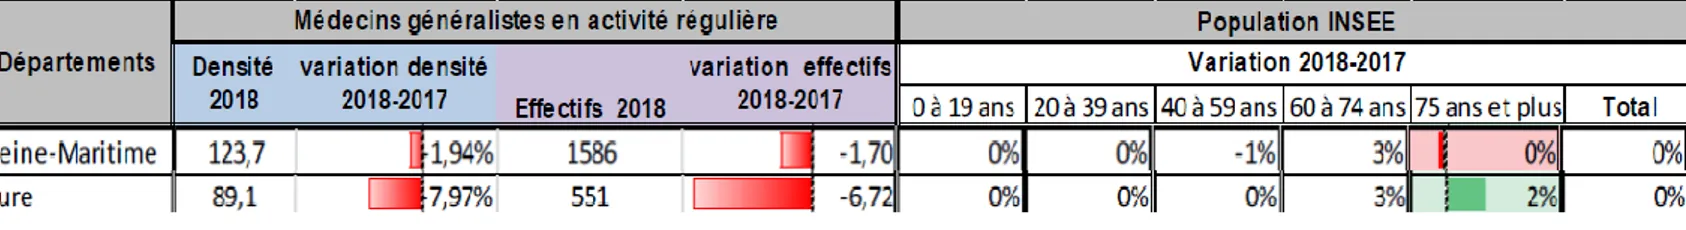 Figure 5 : Variation des effectifs de médecine générale en Haute-Normandie entre 2017 et 2018 